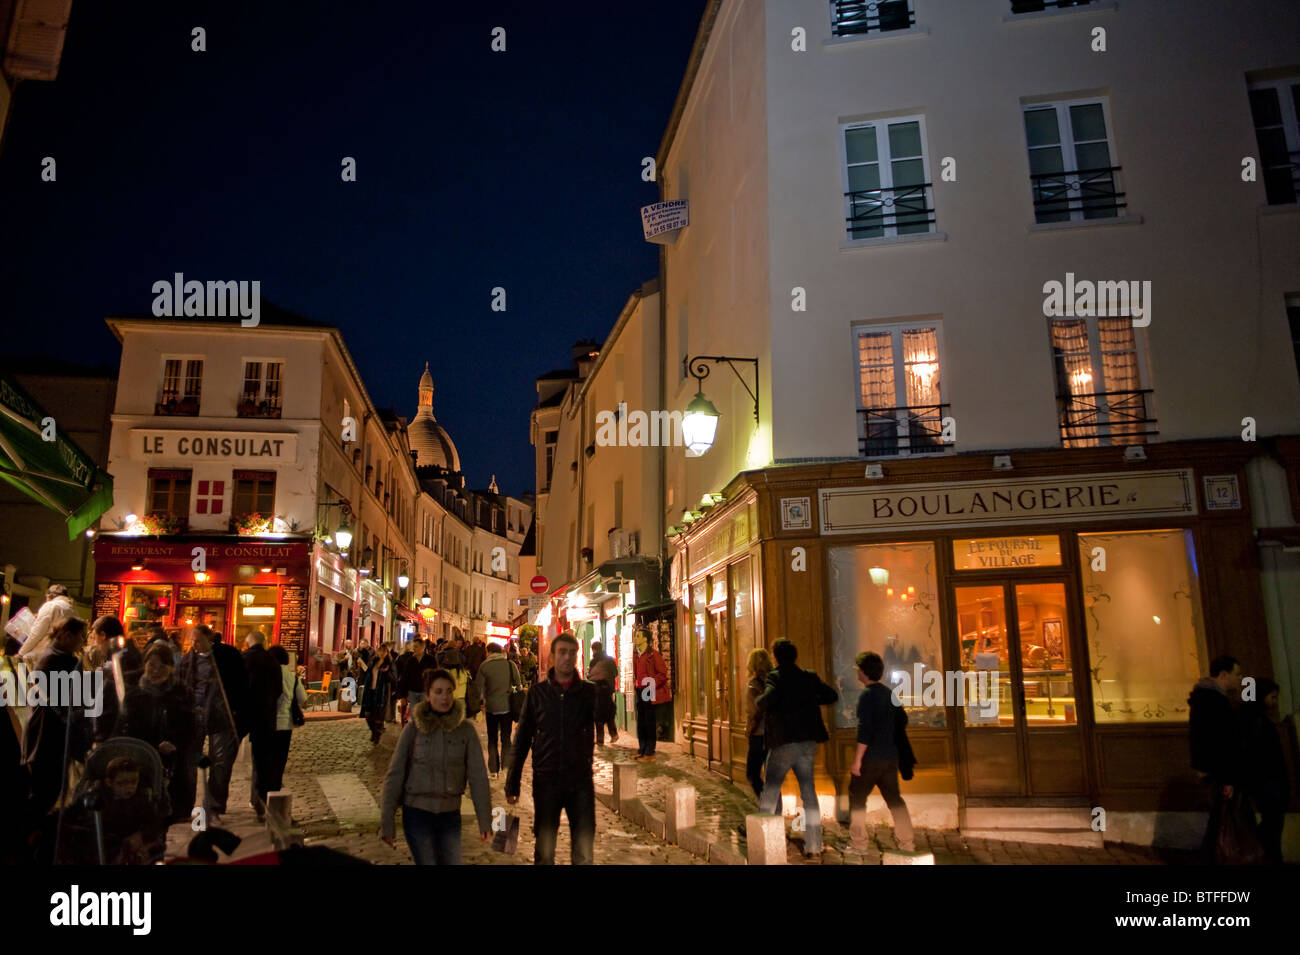 Paris, France, scène de rue, les gens se rendant sur Montmartre, parisien, dans la nuit, le Français Boulangerie, Bakery Shop Banque D'Images